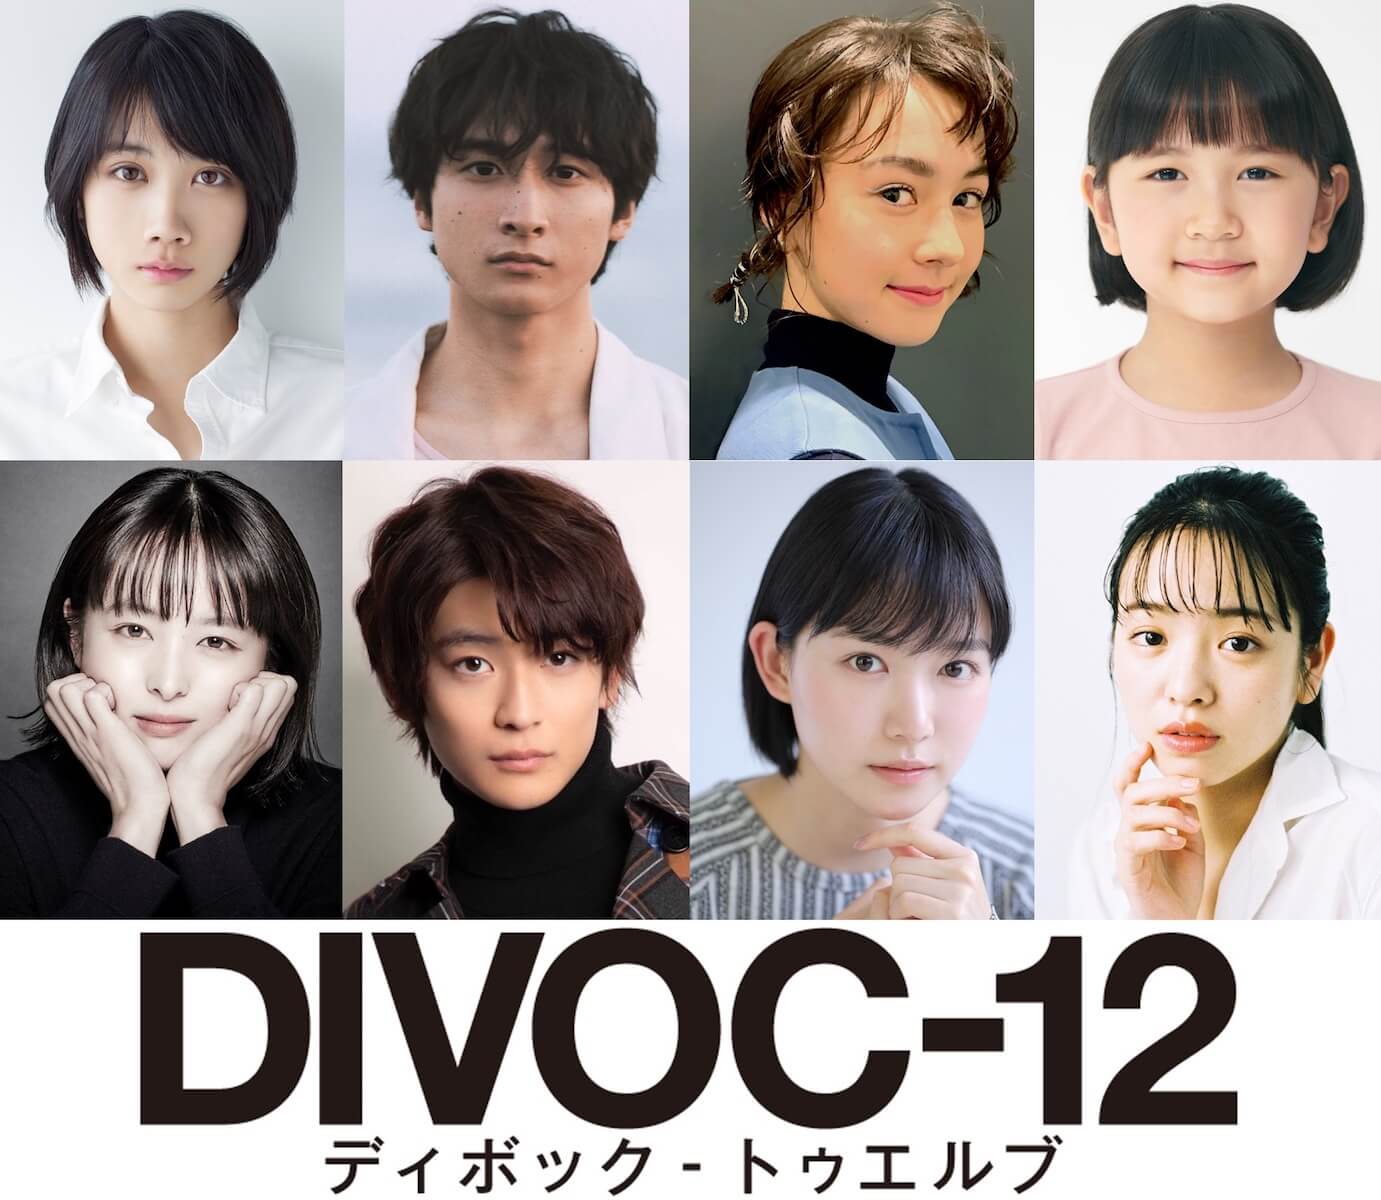 『DIVOC-12』に松本穂香ら参加